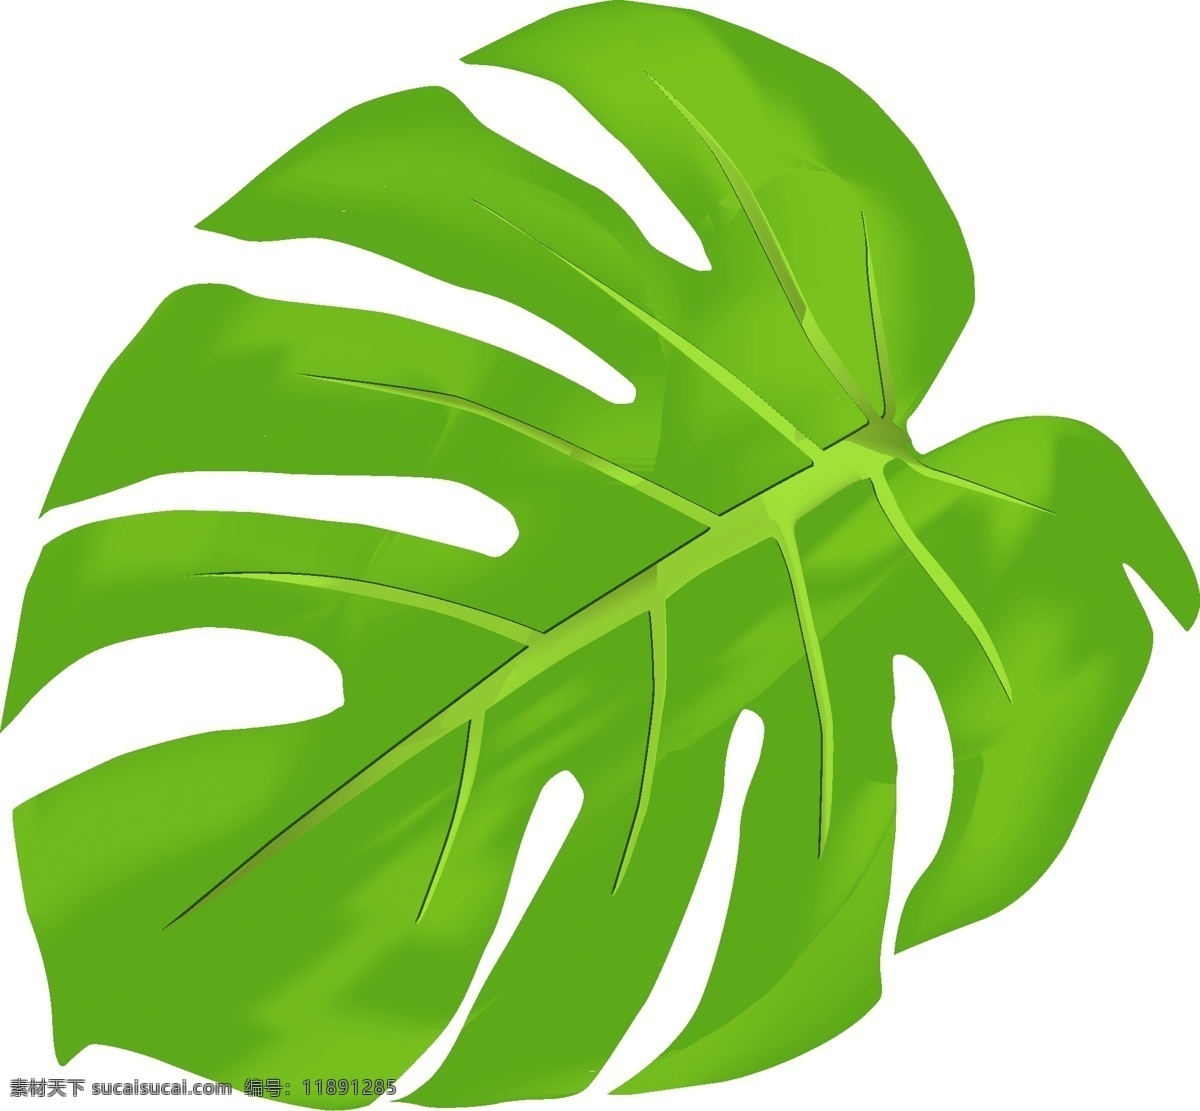 卡通 手绘 薄荷 绿叶 卡通手绘 创意 植物 简约 小 清新 叶子 卡通叶子 手绘叶子 青色叶子 小清新 薄荷叶 叶片